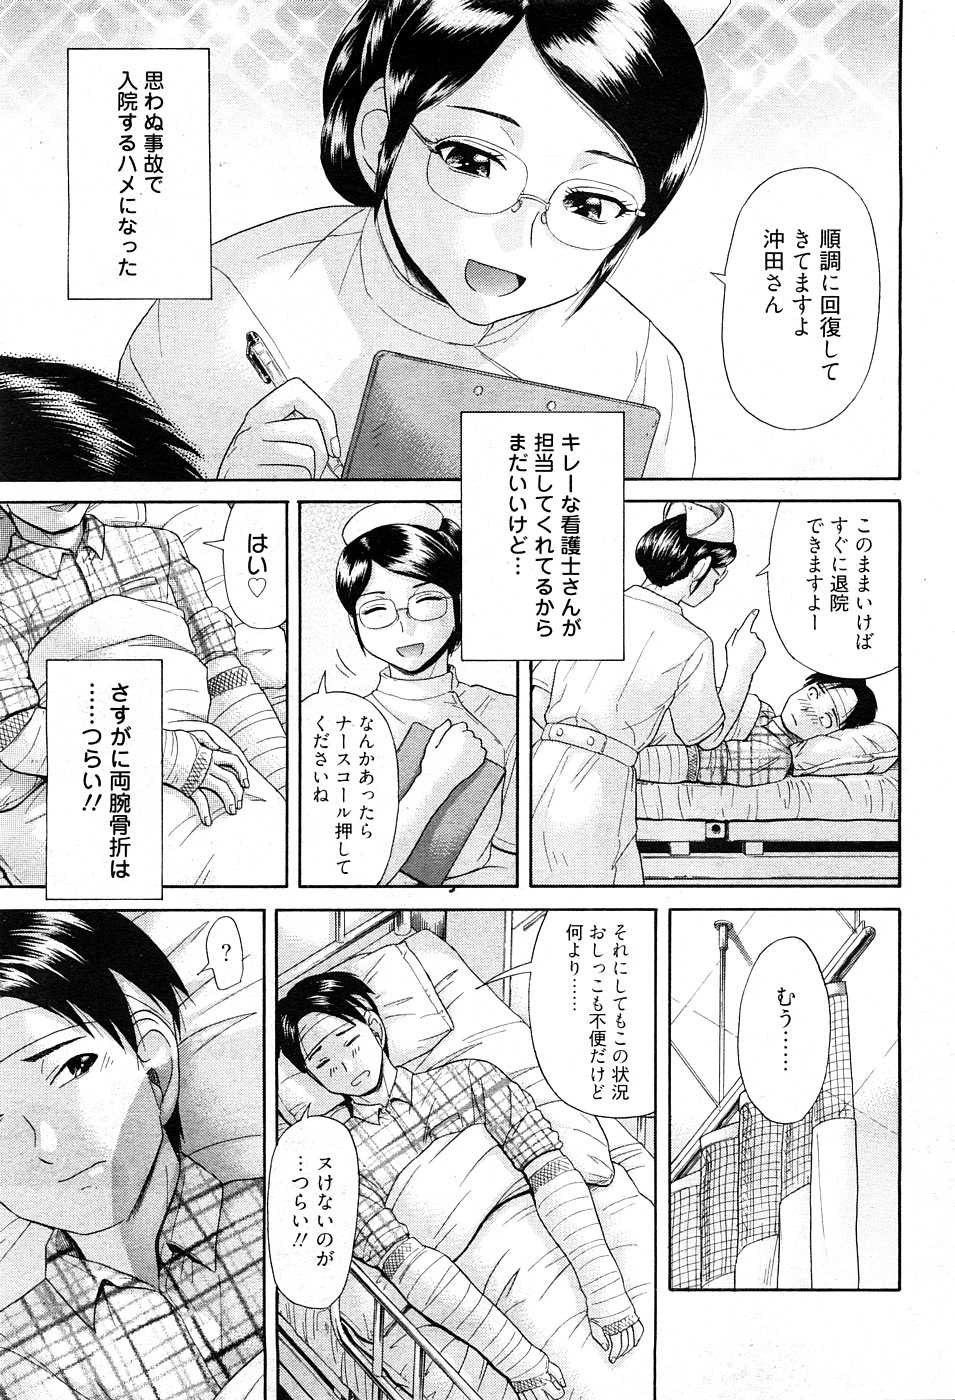 [H-Magazine] Chobekomi Vol.27 Feb. 2009 (Tsukitaki) - Page 24